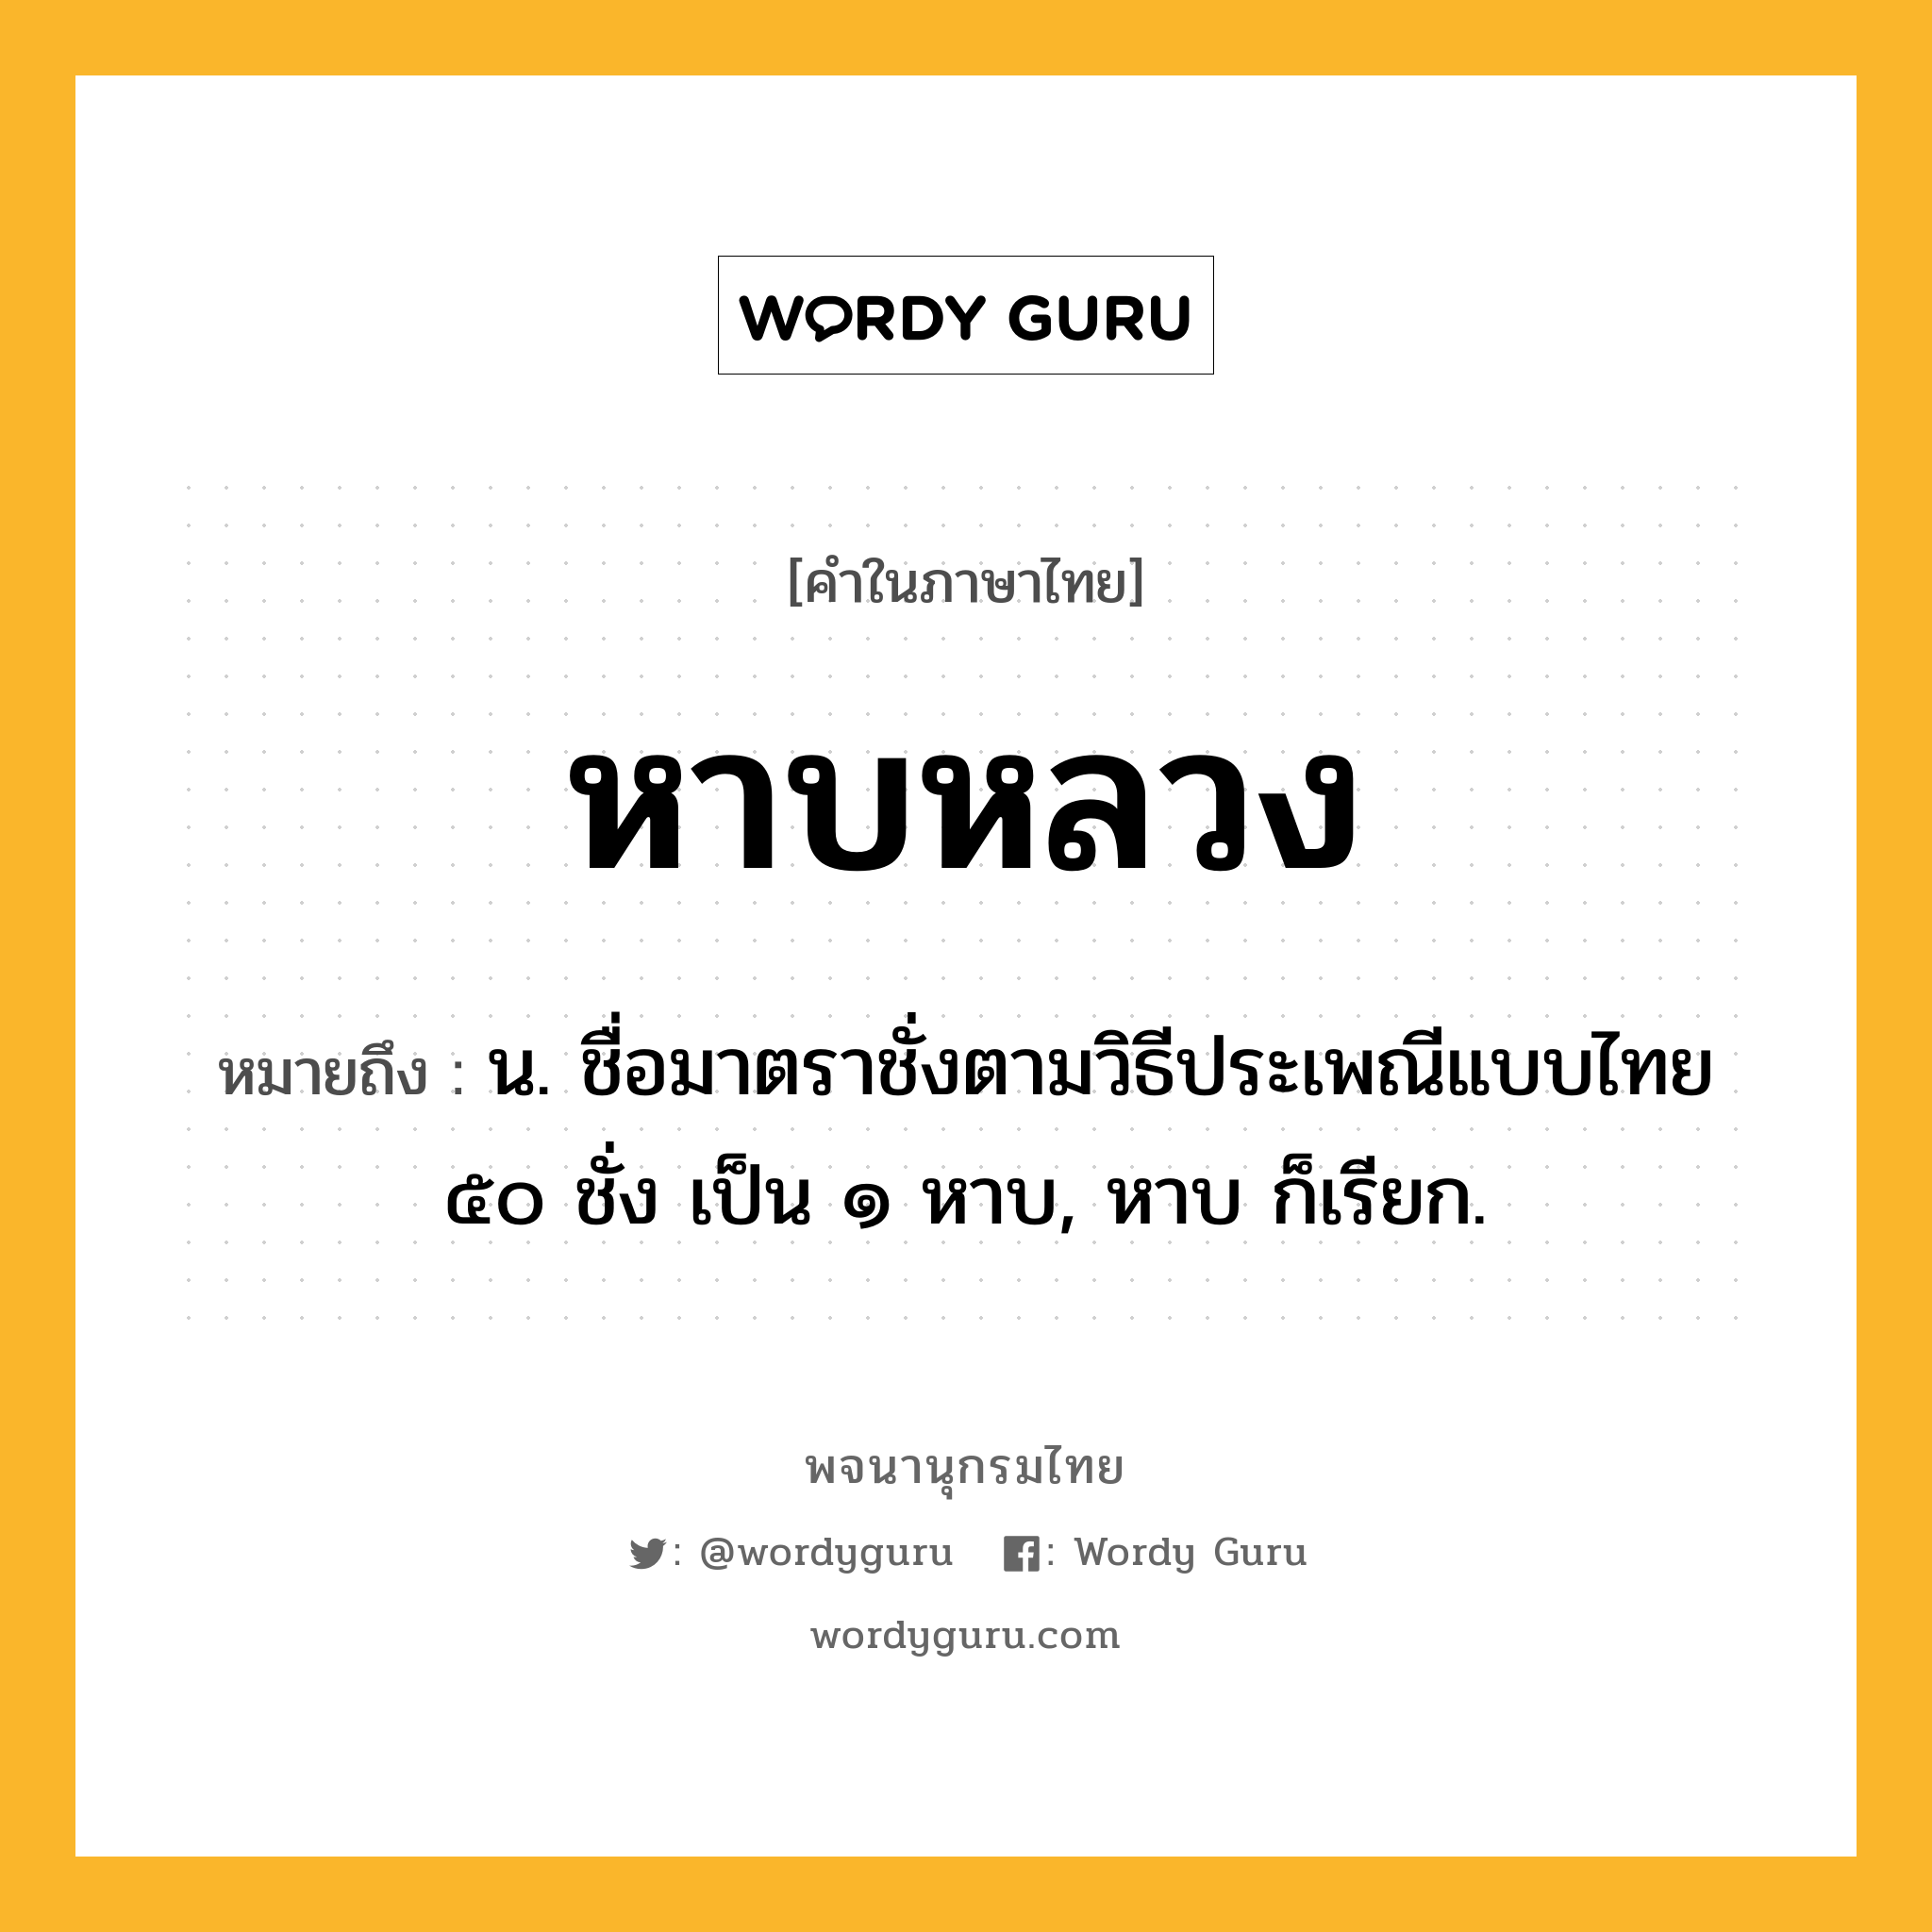 หาบหลวง ความหมาย หมายถึงอะไร?, คำในภาษาไทย หาบหลวง หมายถึง น. ชื่อมาตราชั่งตามวิธีประเพณีแบบไทย ๕๐ ชั่ง เป็น ๑ หาบ, หาบ ก็เรียก.